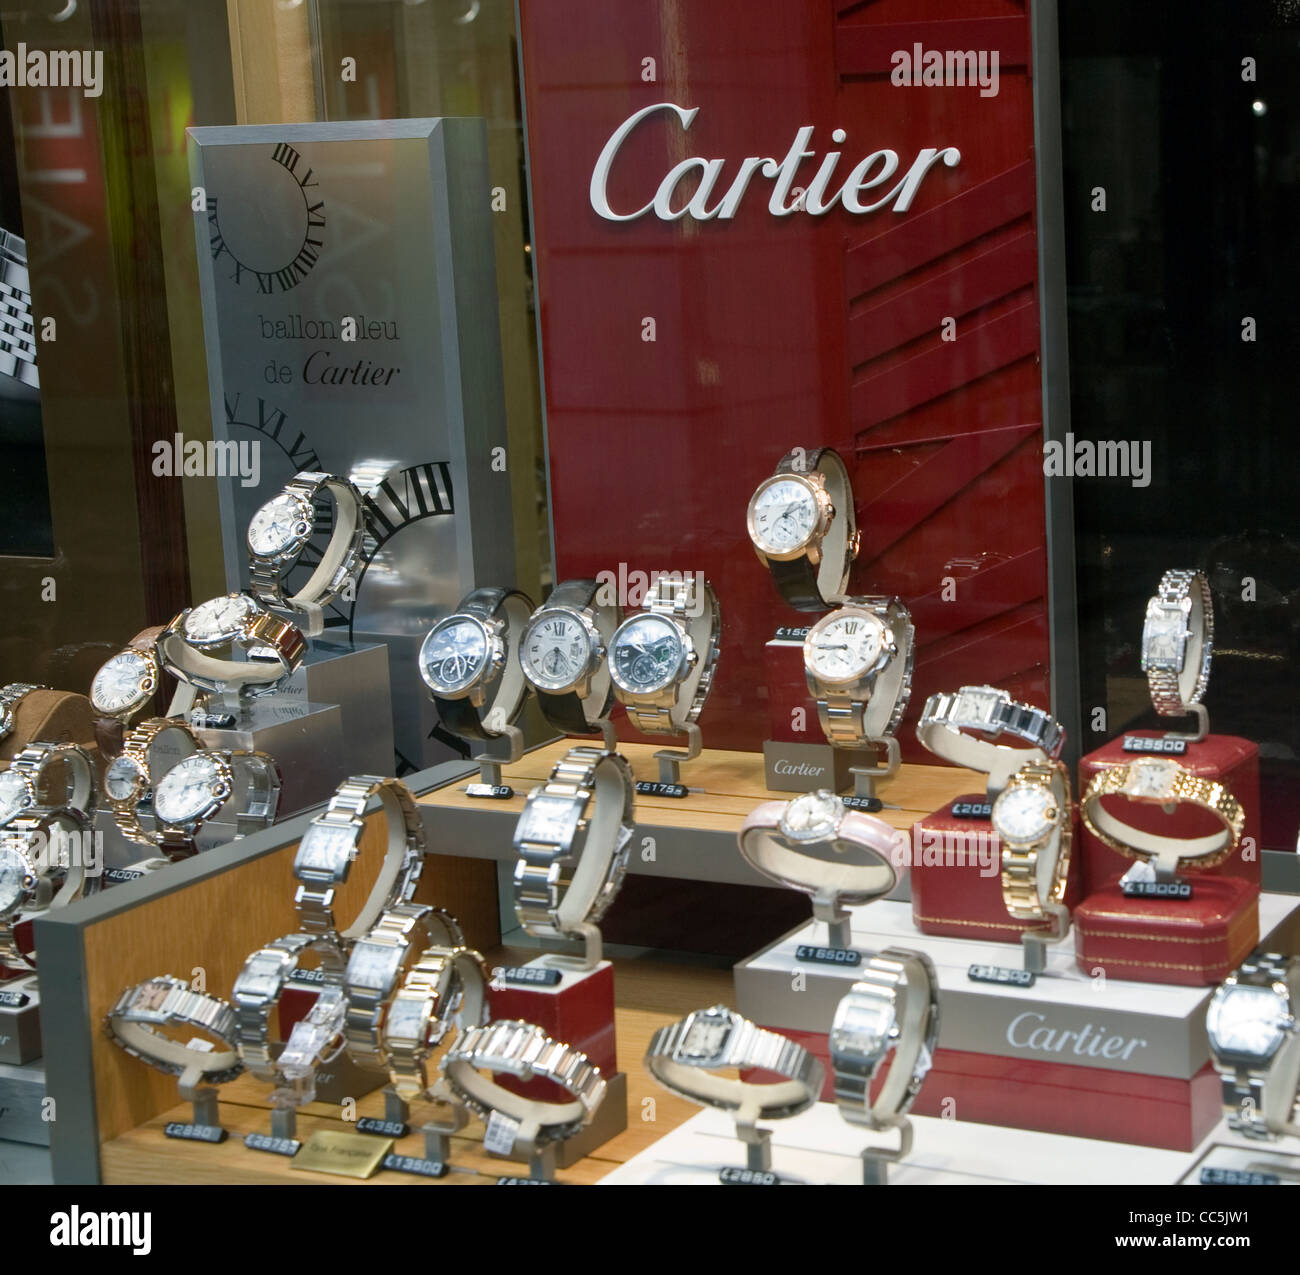 Cartier Uhr Display Schaufenster Uhren Stockfotografie - Alamy